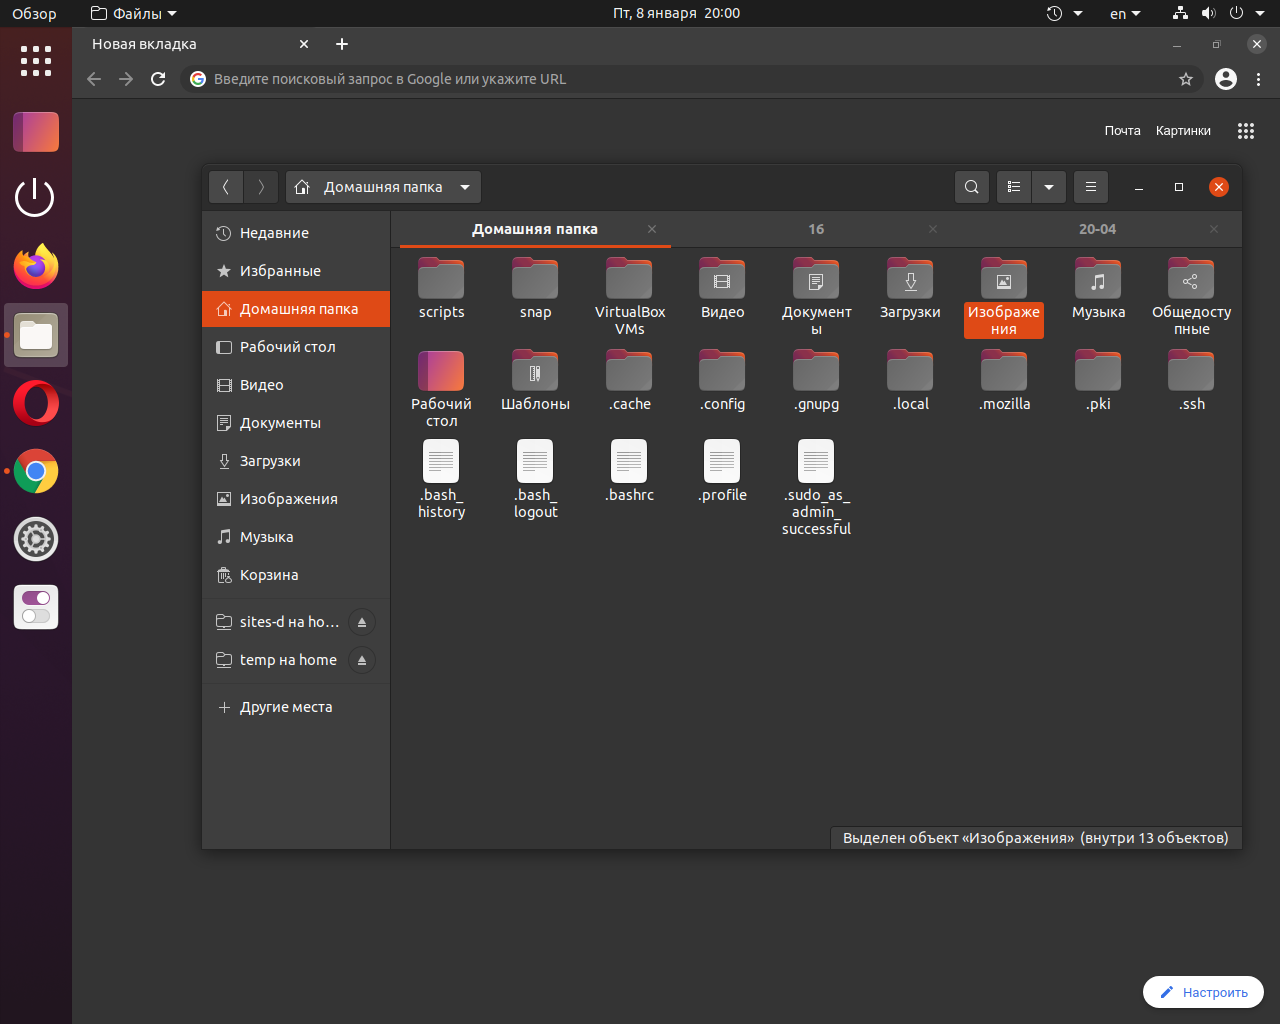 Ubuntu 20.04 с темной темой оформления